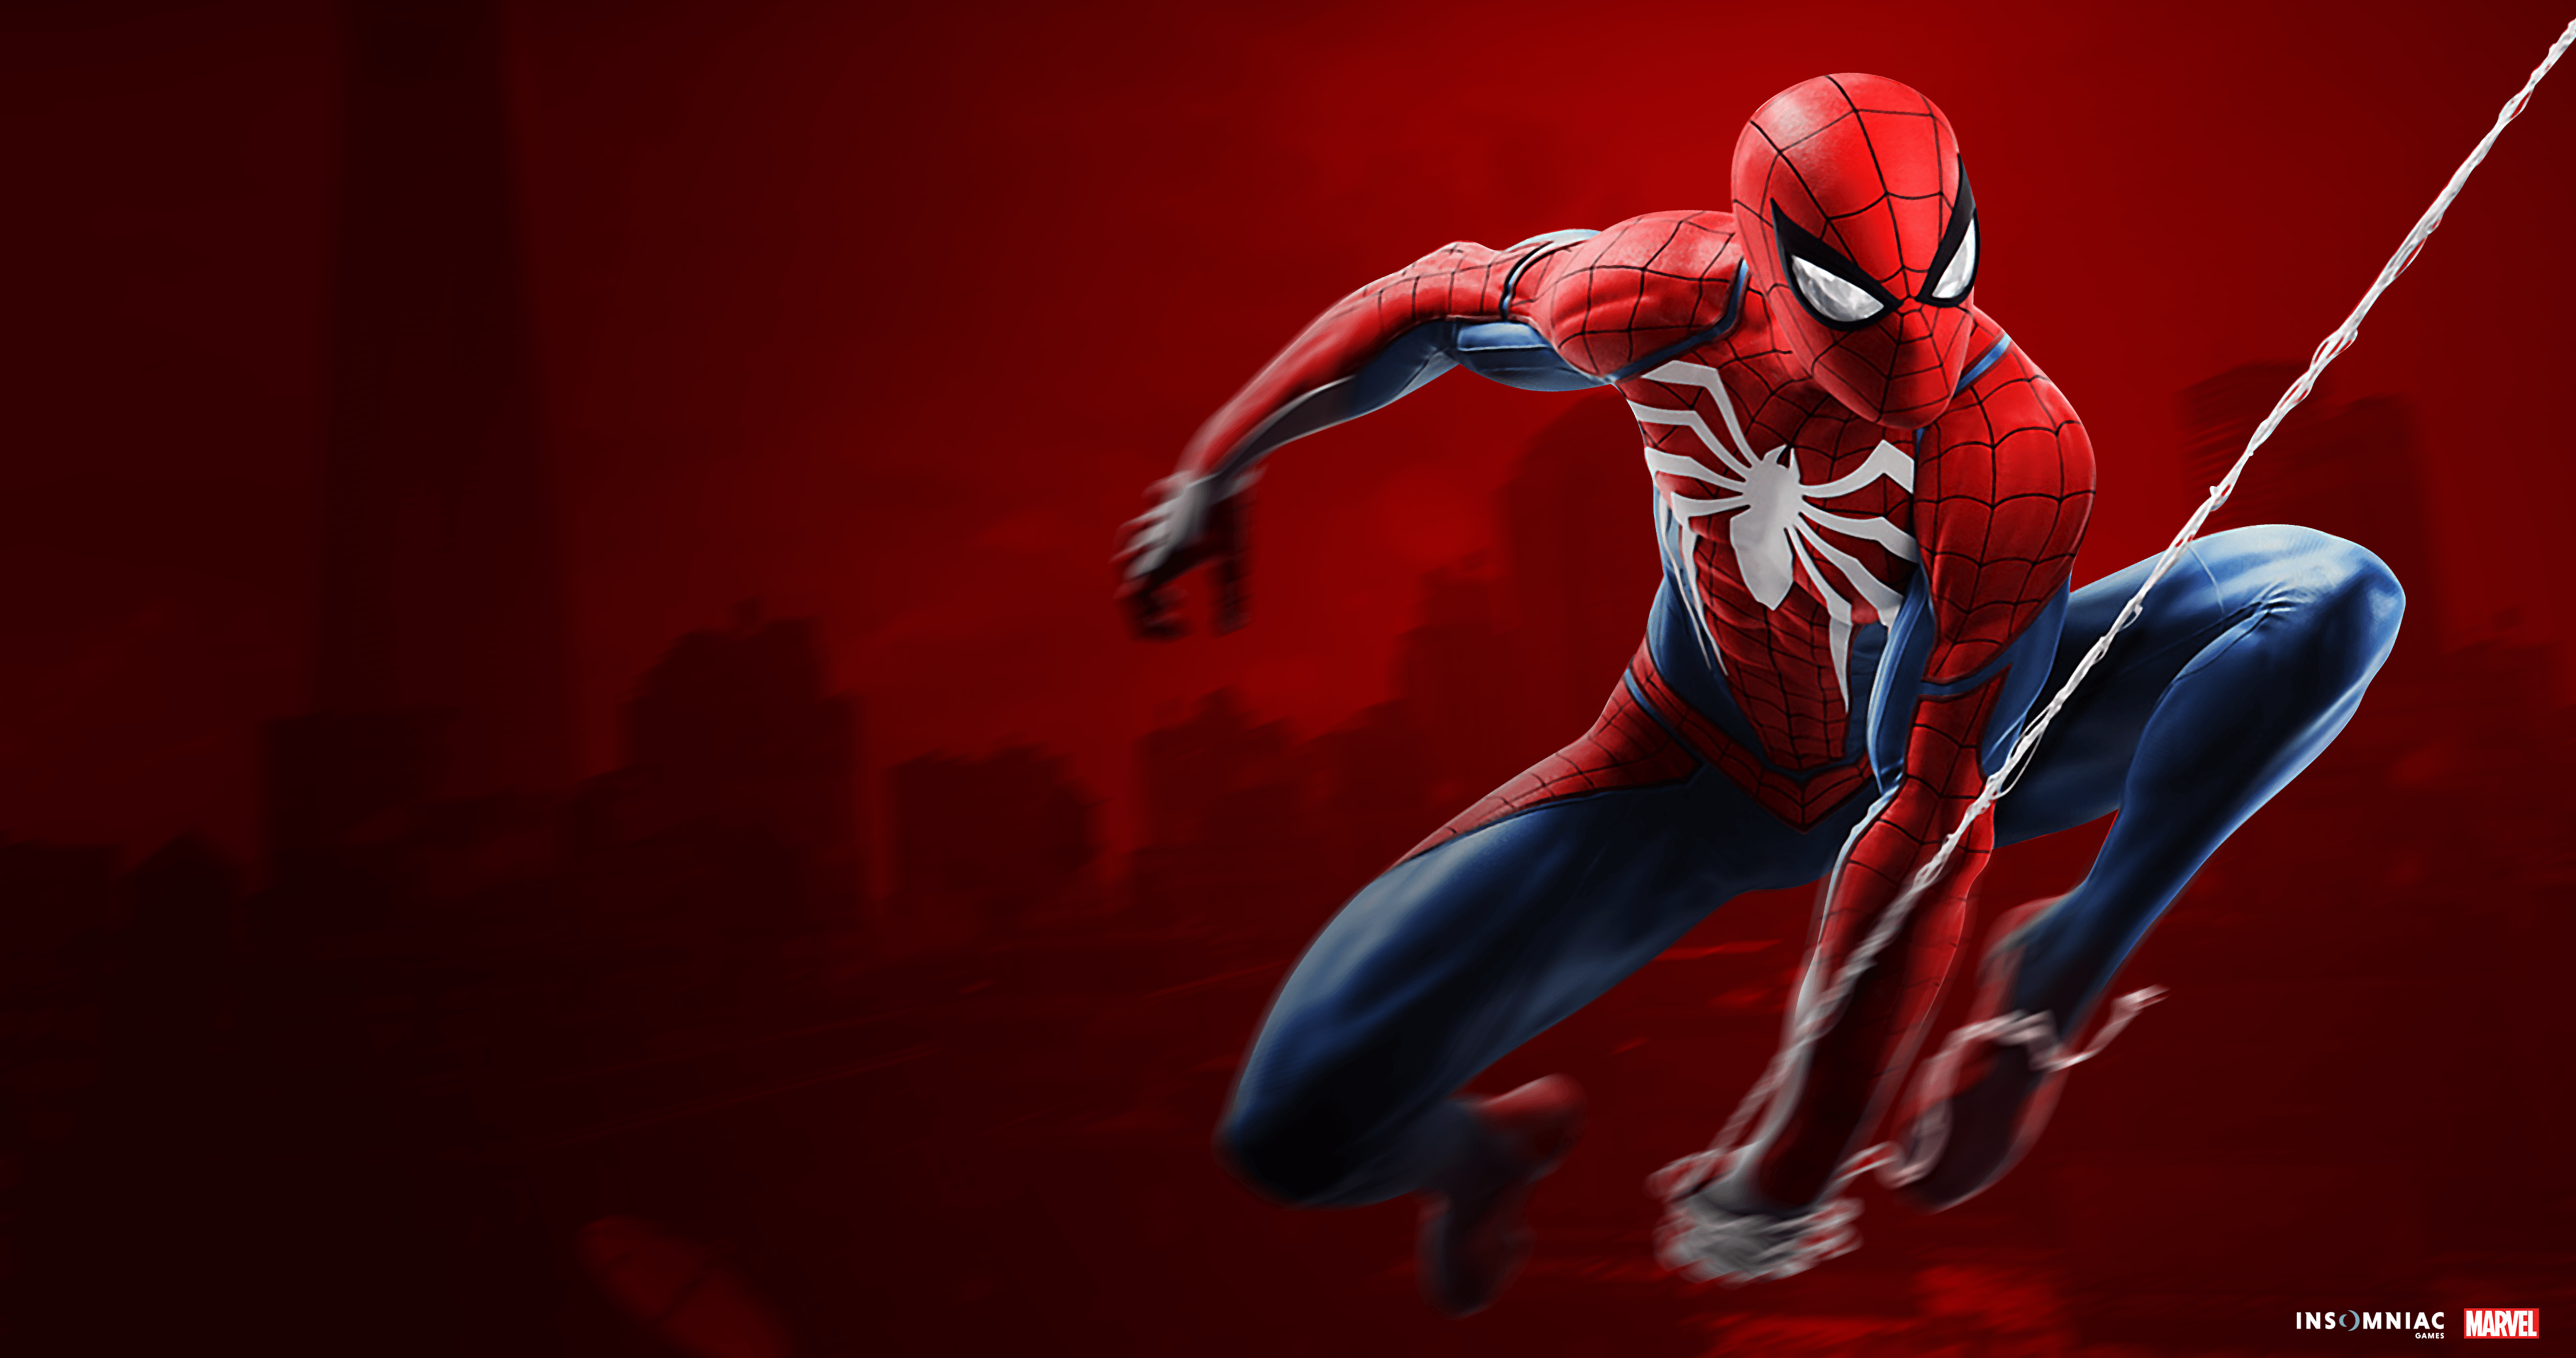 Spider Man PS4 4k Custom Wallpaper 4k Ultra HD Wallpaper